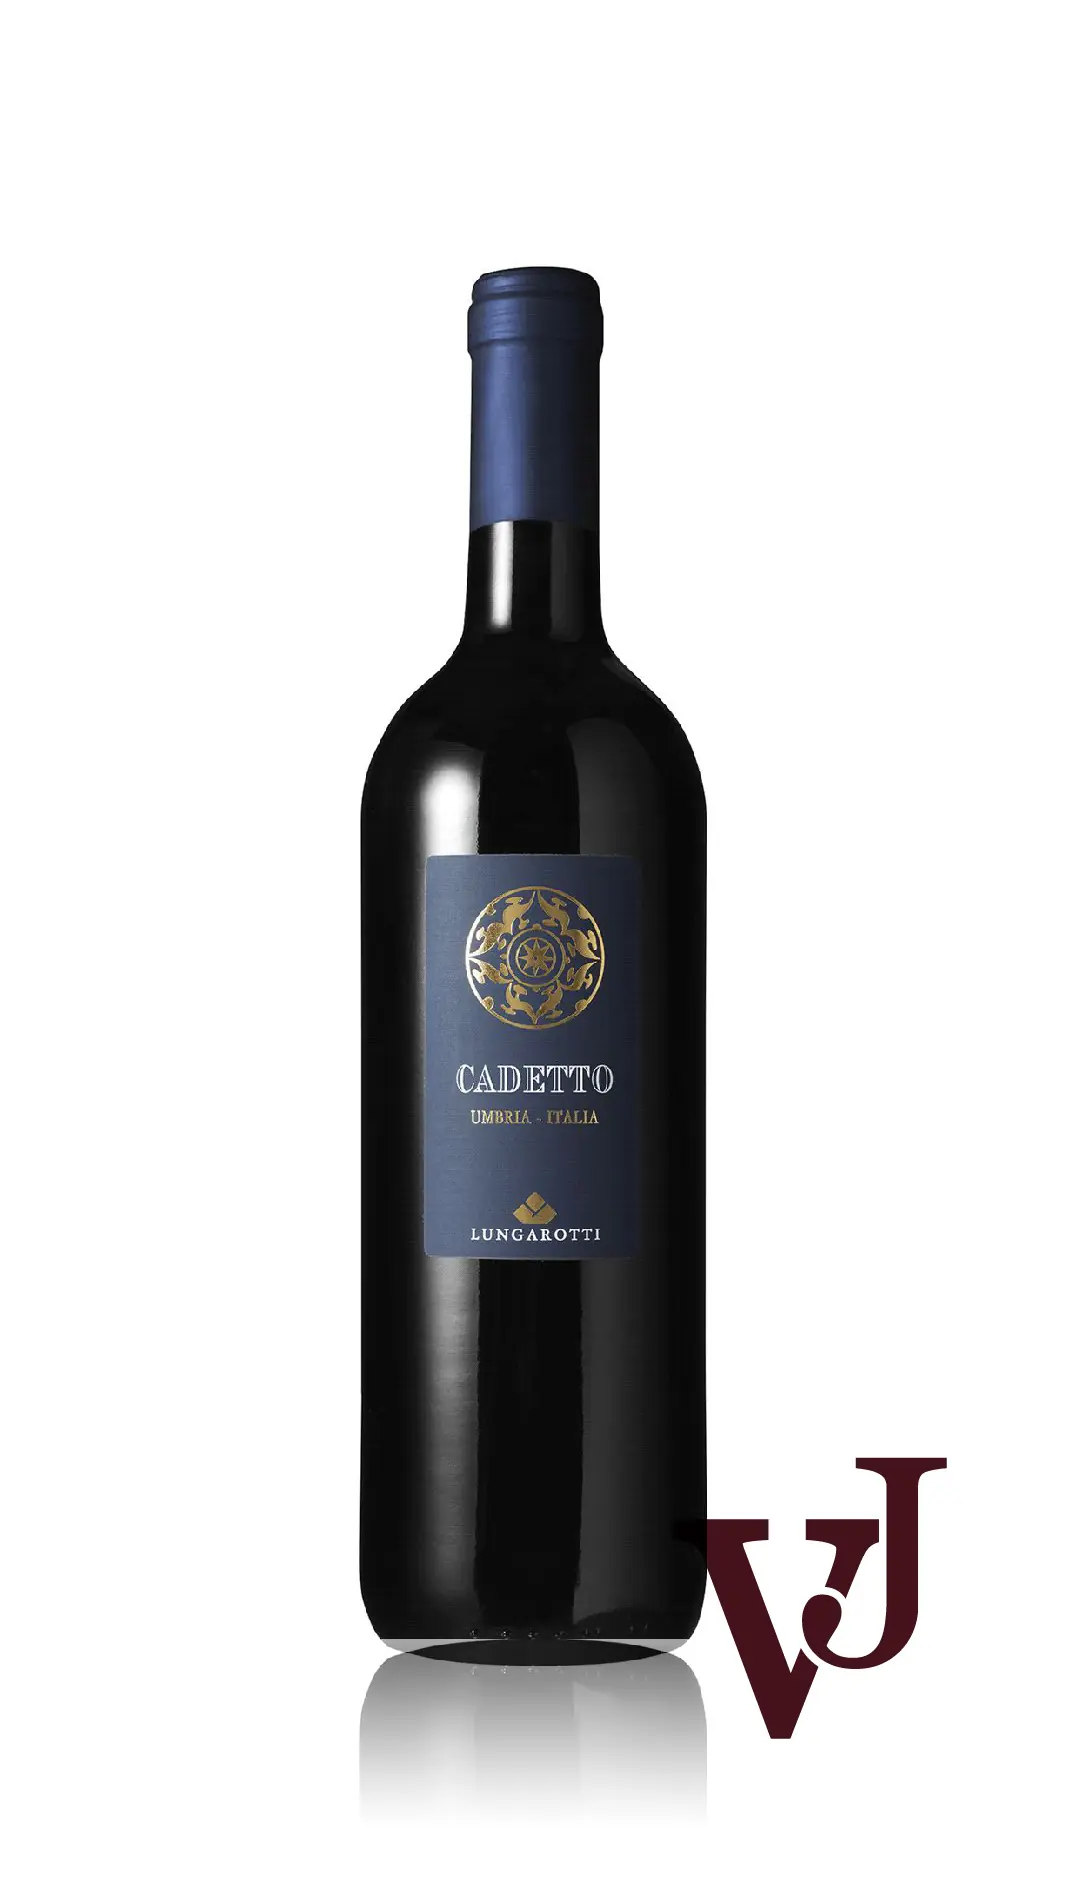 Rött Vin - Cadetto artikel nummer 7022301 från producenten Lungarotti från området Italien - Vinjournalen.se